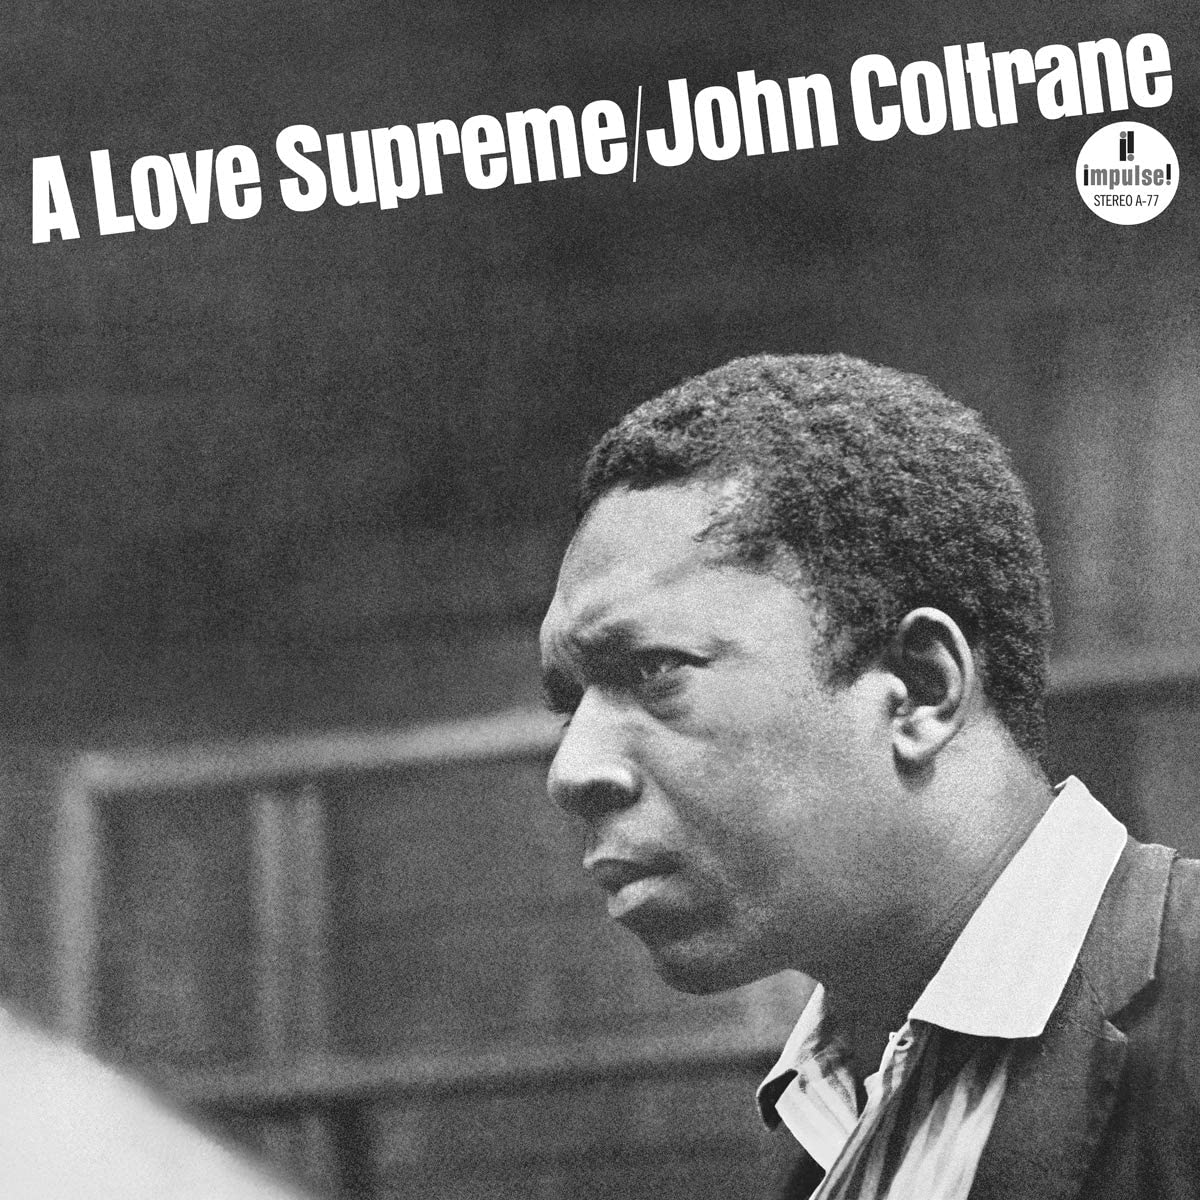 Coltrane, John/A Love Supreme (Verve Acoustic Sounds Series) [LP]